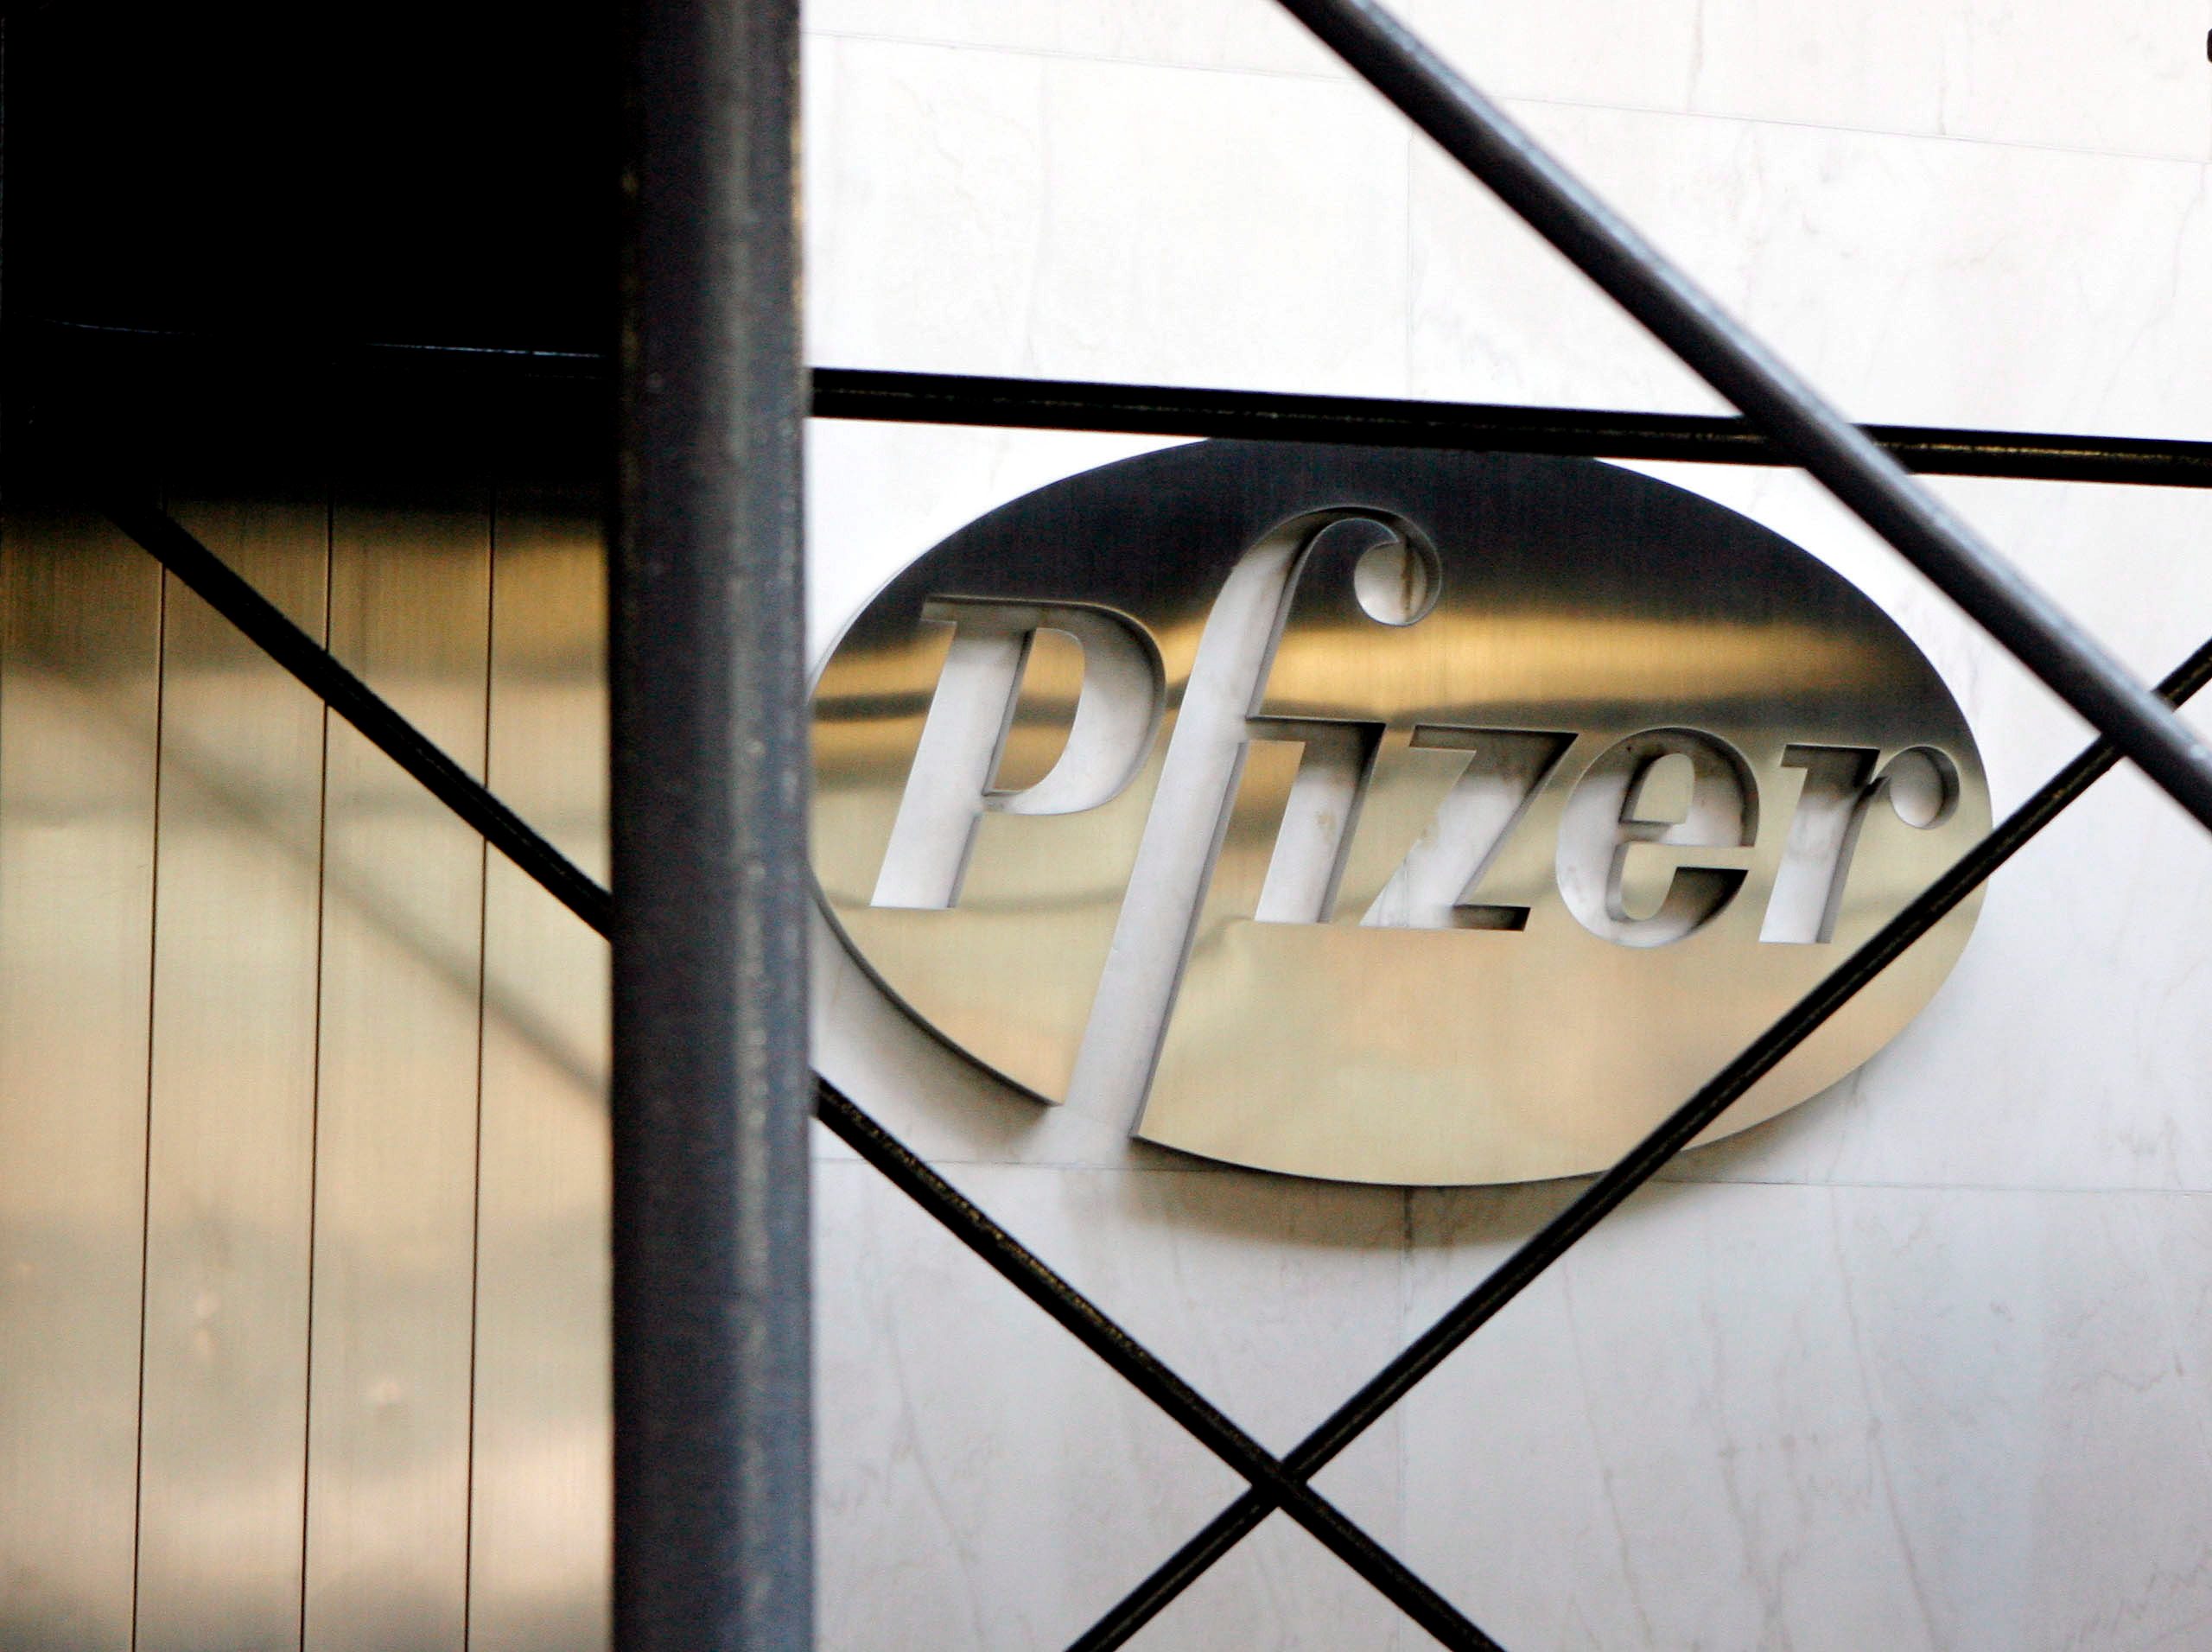 Pfizer to buy eczema specialist Anacor for $5.2 billion